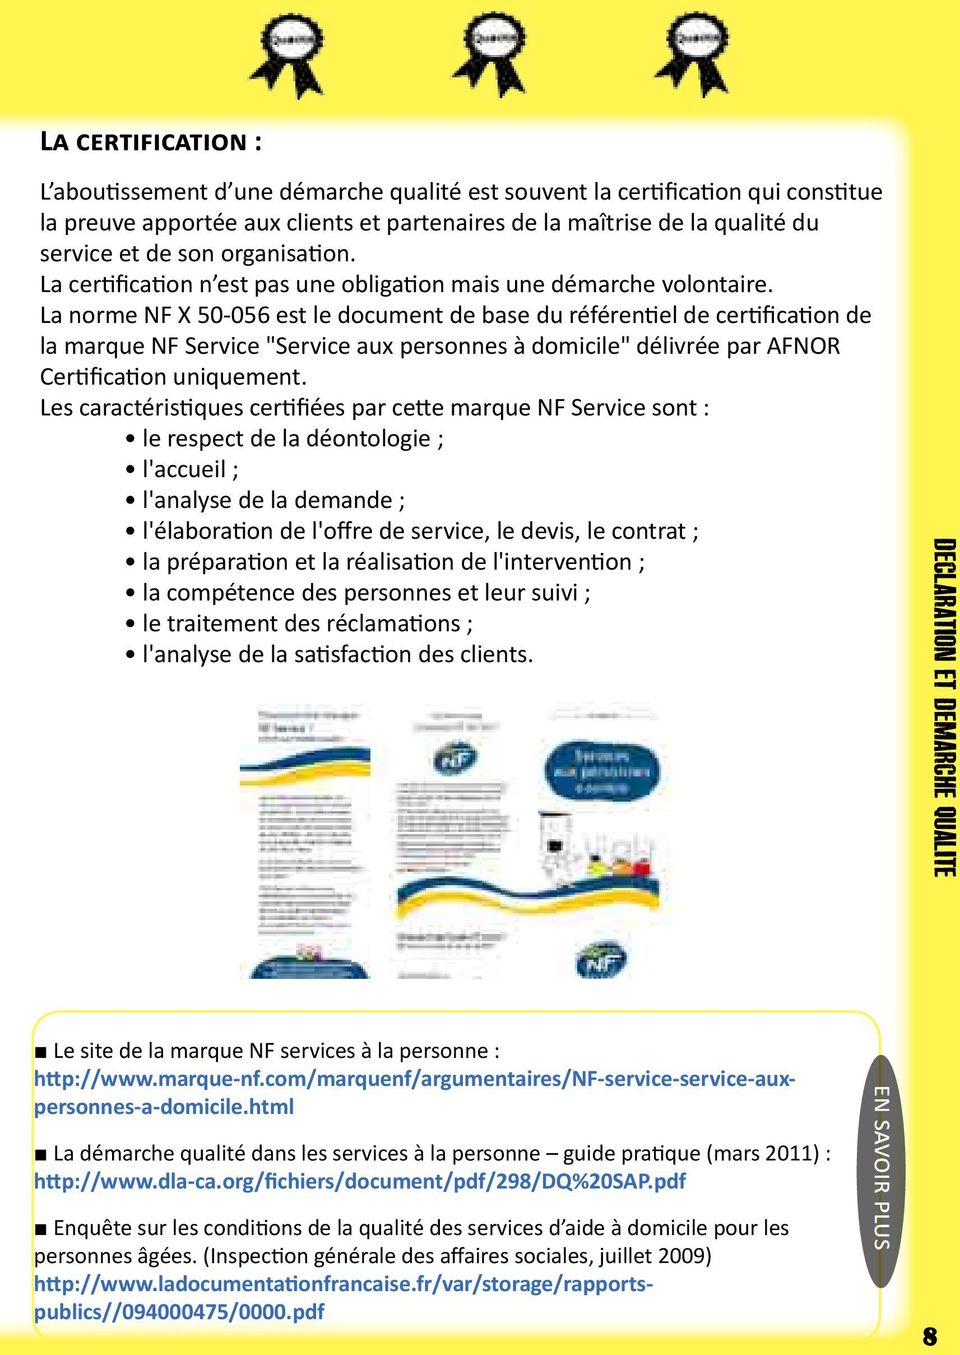 La norme NF X 50-056 est le document de base du référentiel de certification de la marque NF Service "Service aux personnes à domicile" délivrée par AFNOR Certification uniquement.